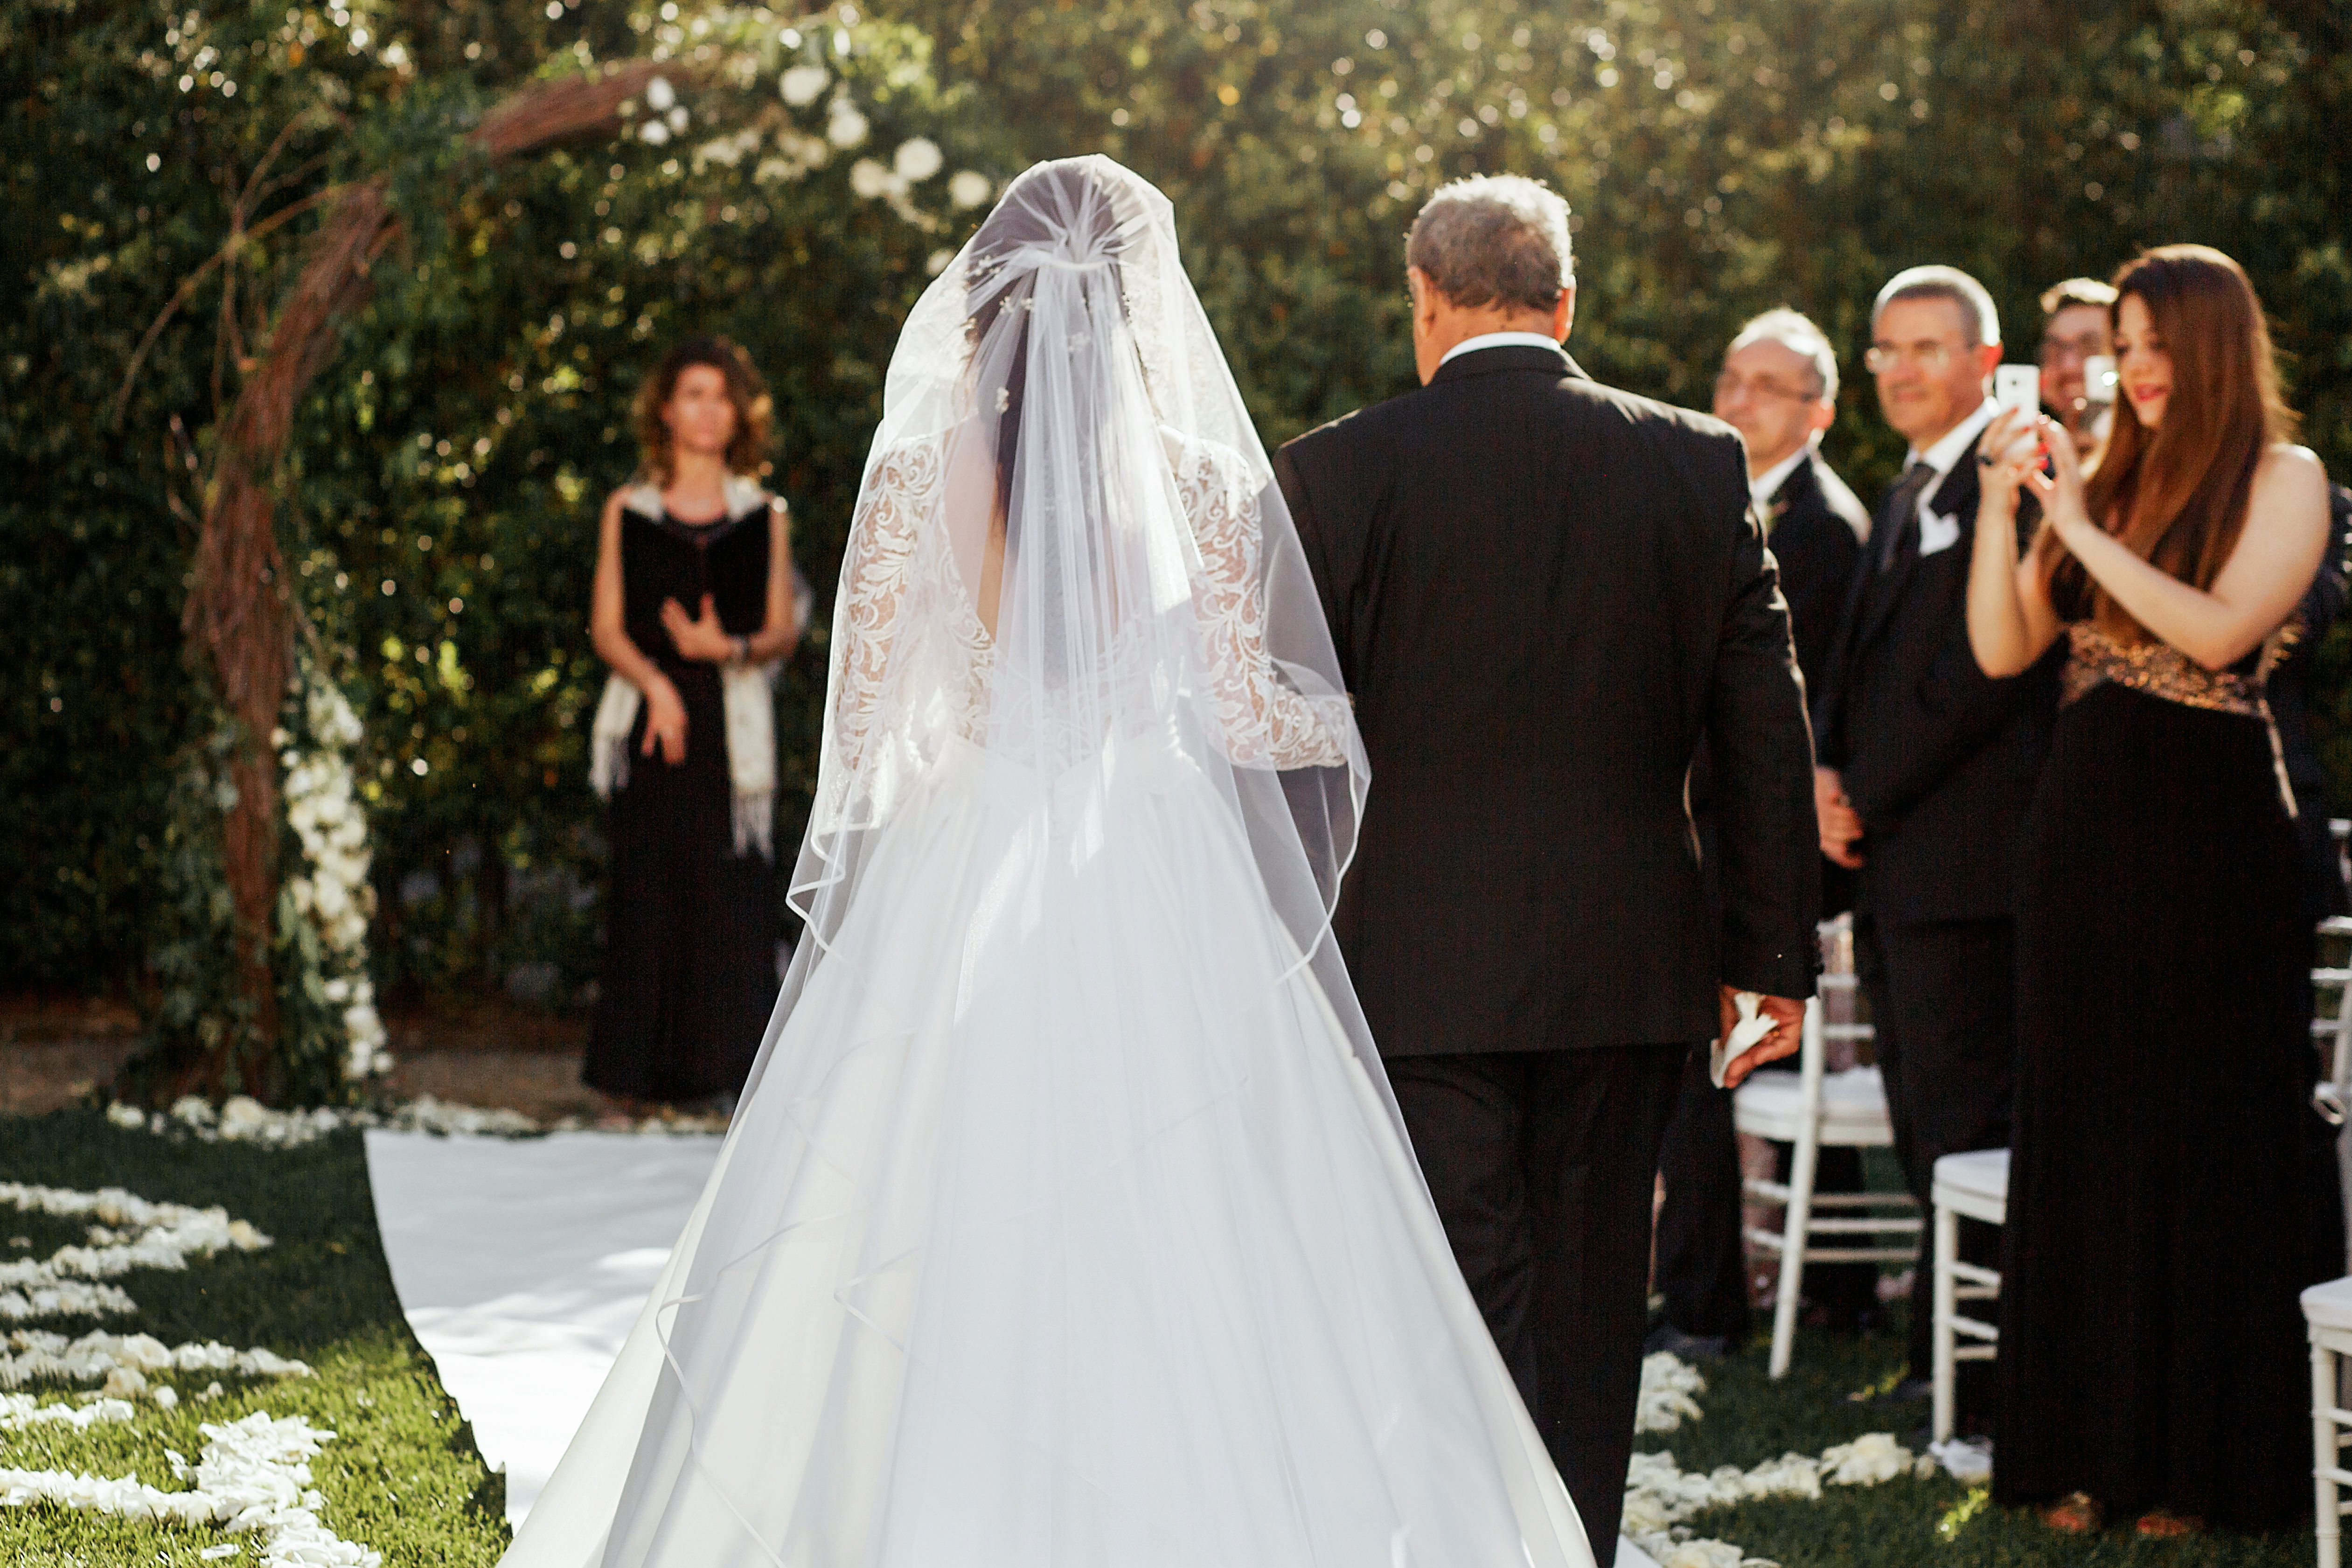 Vater, der seine Tochter an ihrem Hochzeitstag zum Altar führt | Quelle Shutterstock